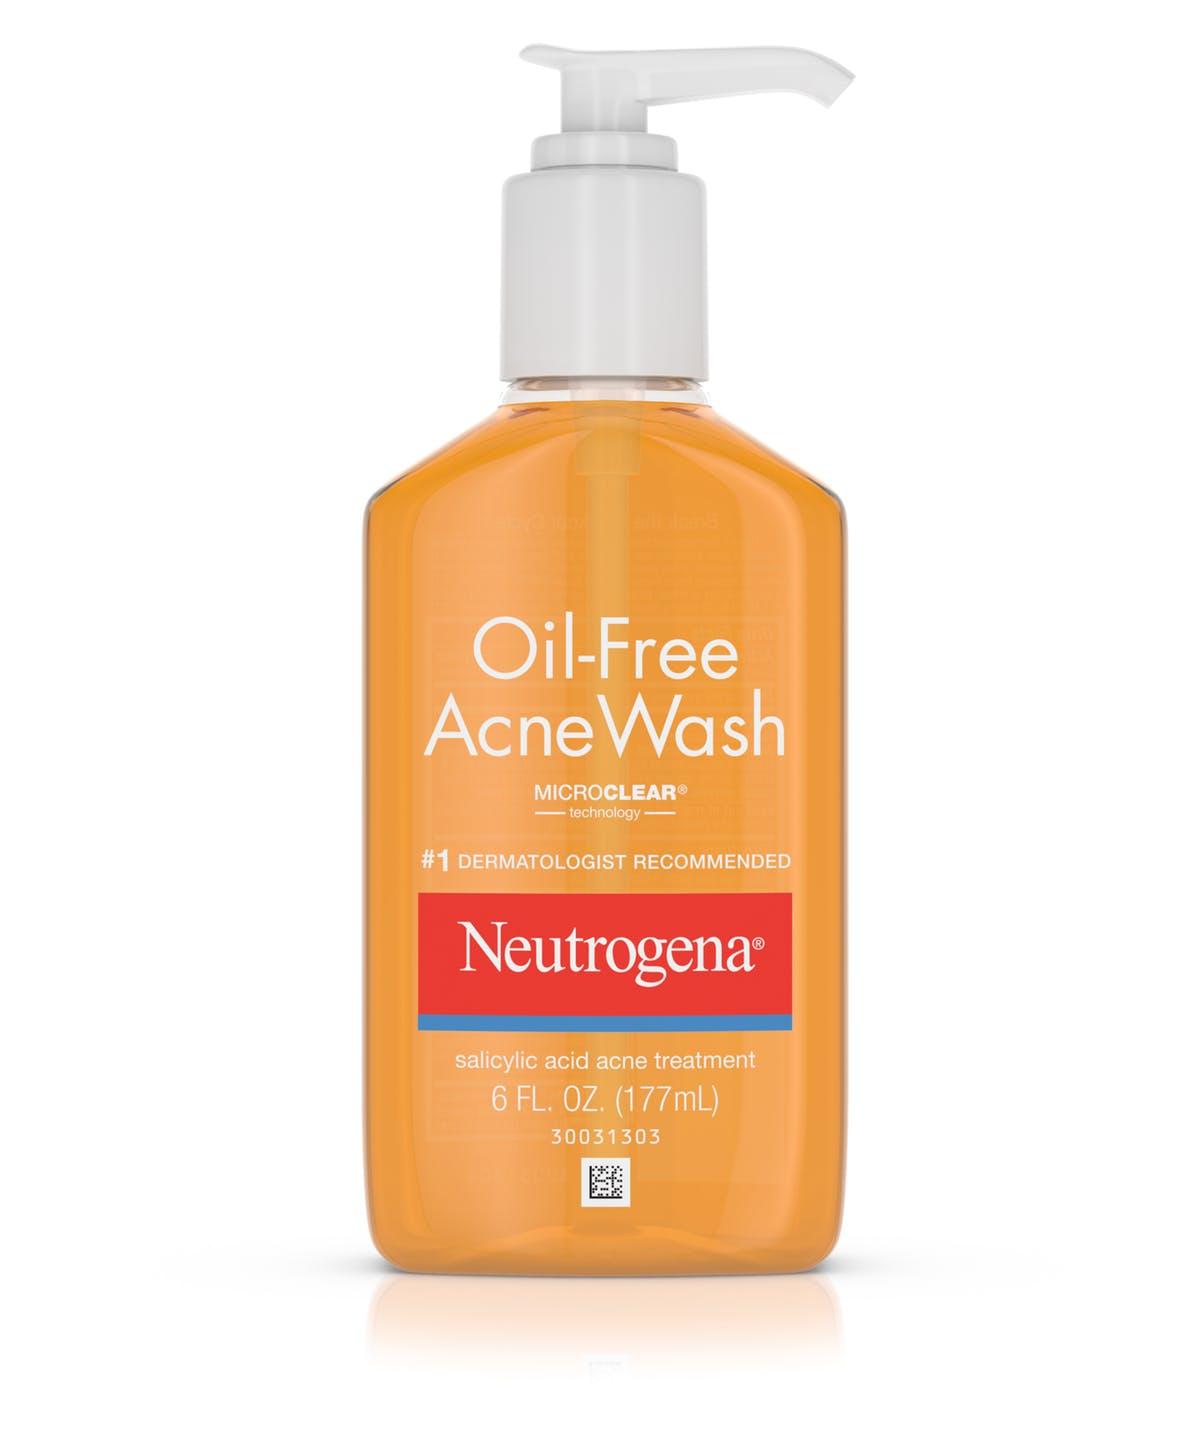 Sửa rửa mặt Neutrogena giúp giảm tình trạng bã nhờn và đổ dầu trên da. (Nguồn: Internet)